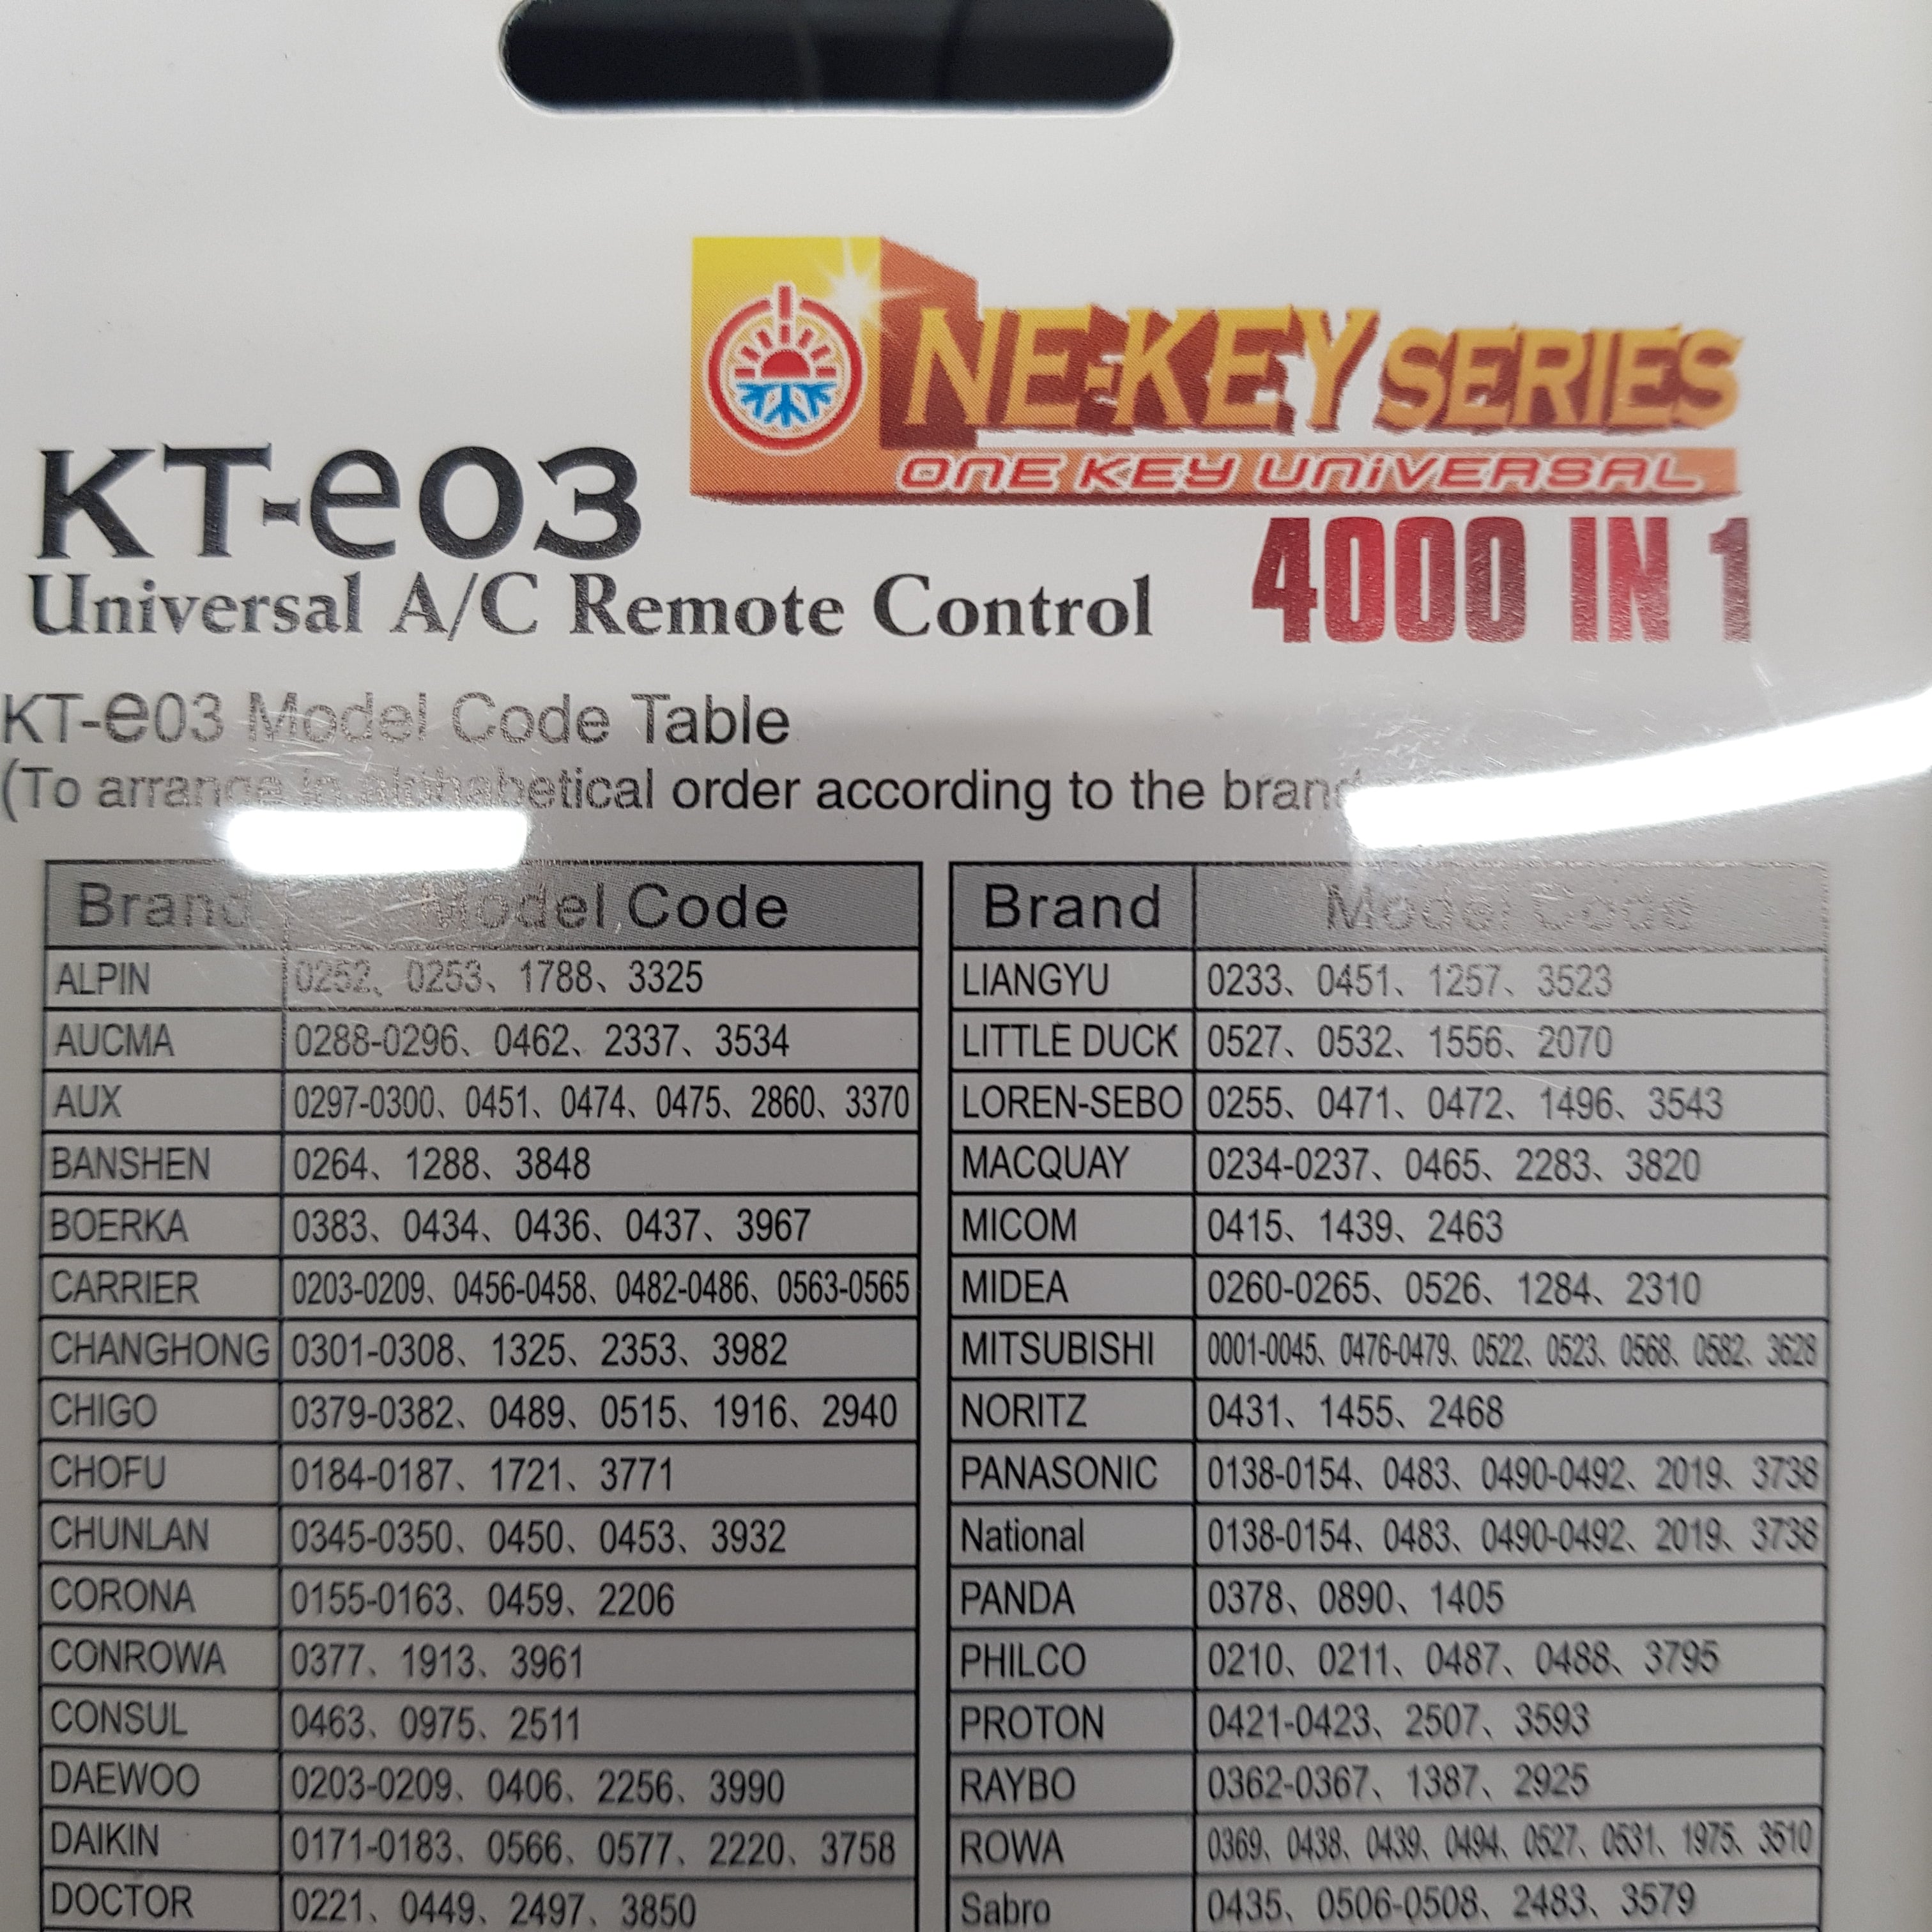 Telecomando per condizionatore a/c universale kt-e03 Skl SKL